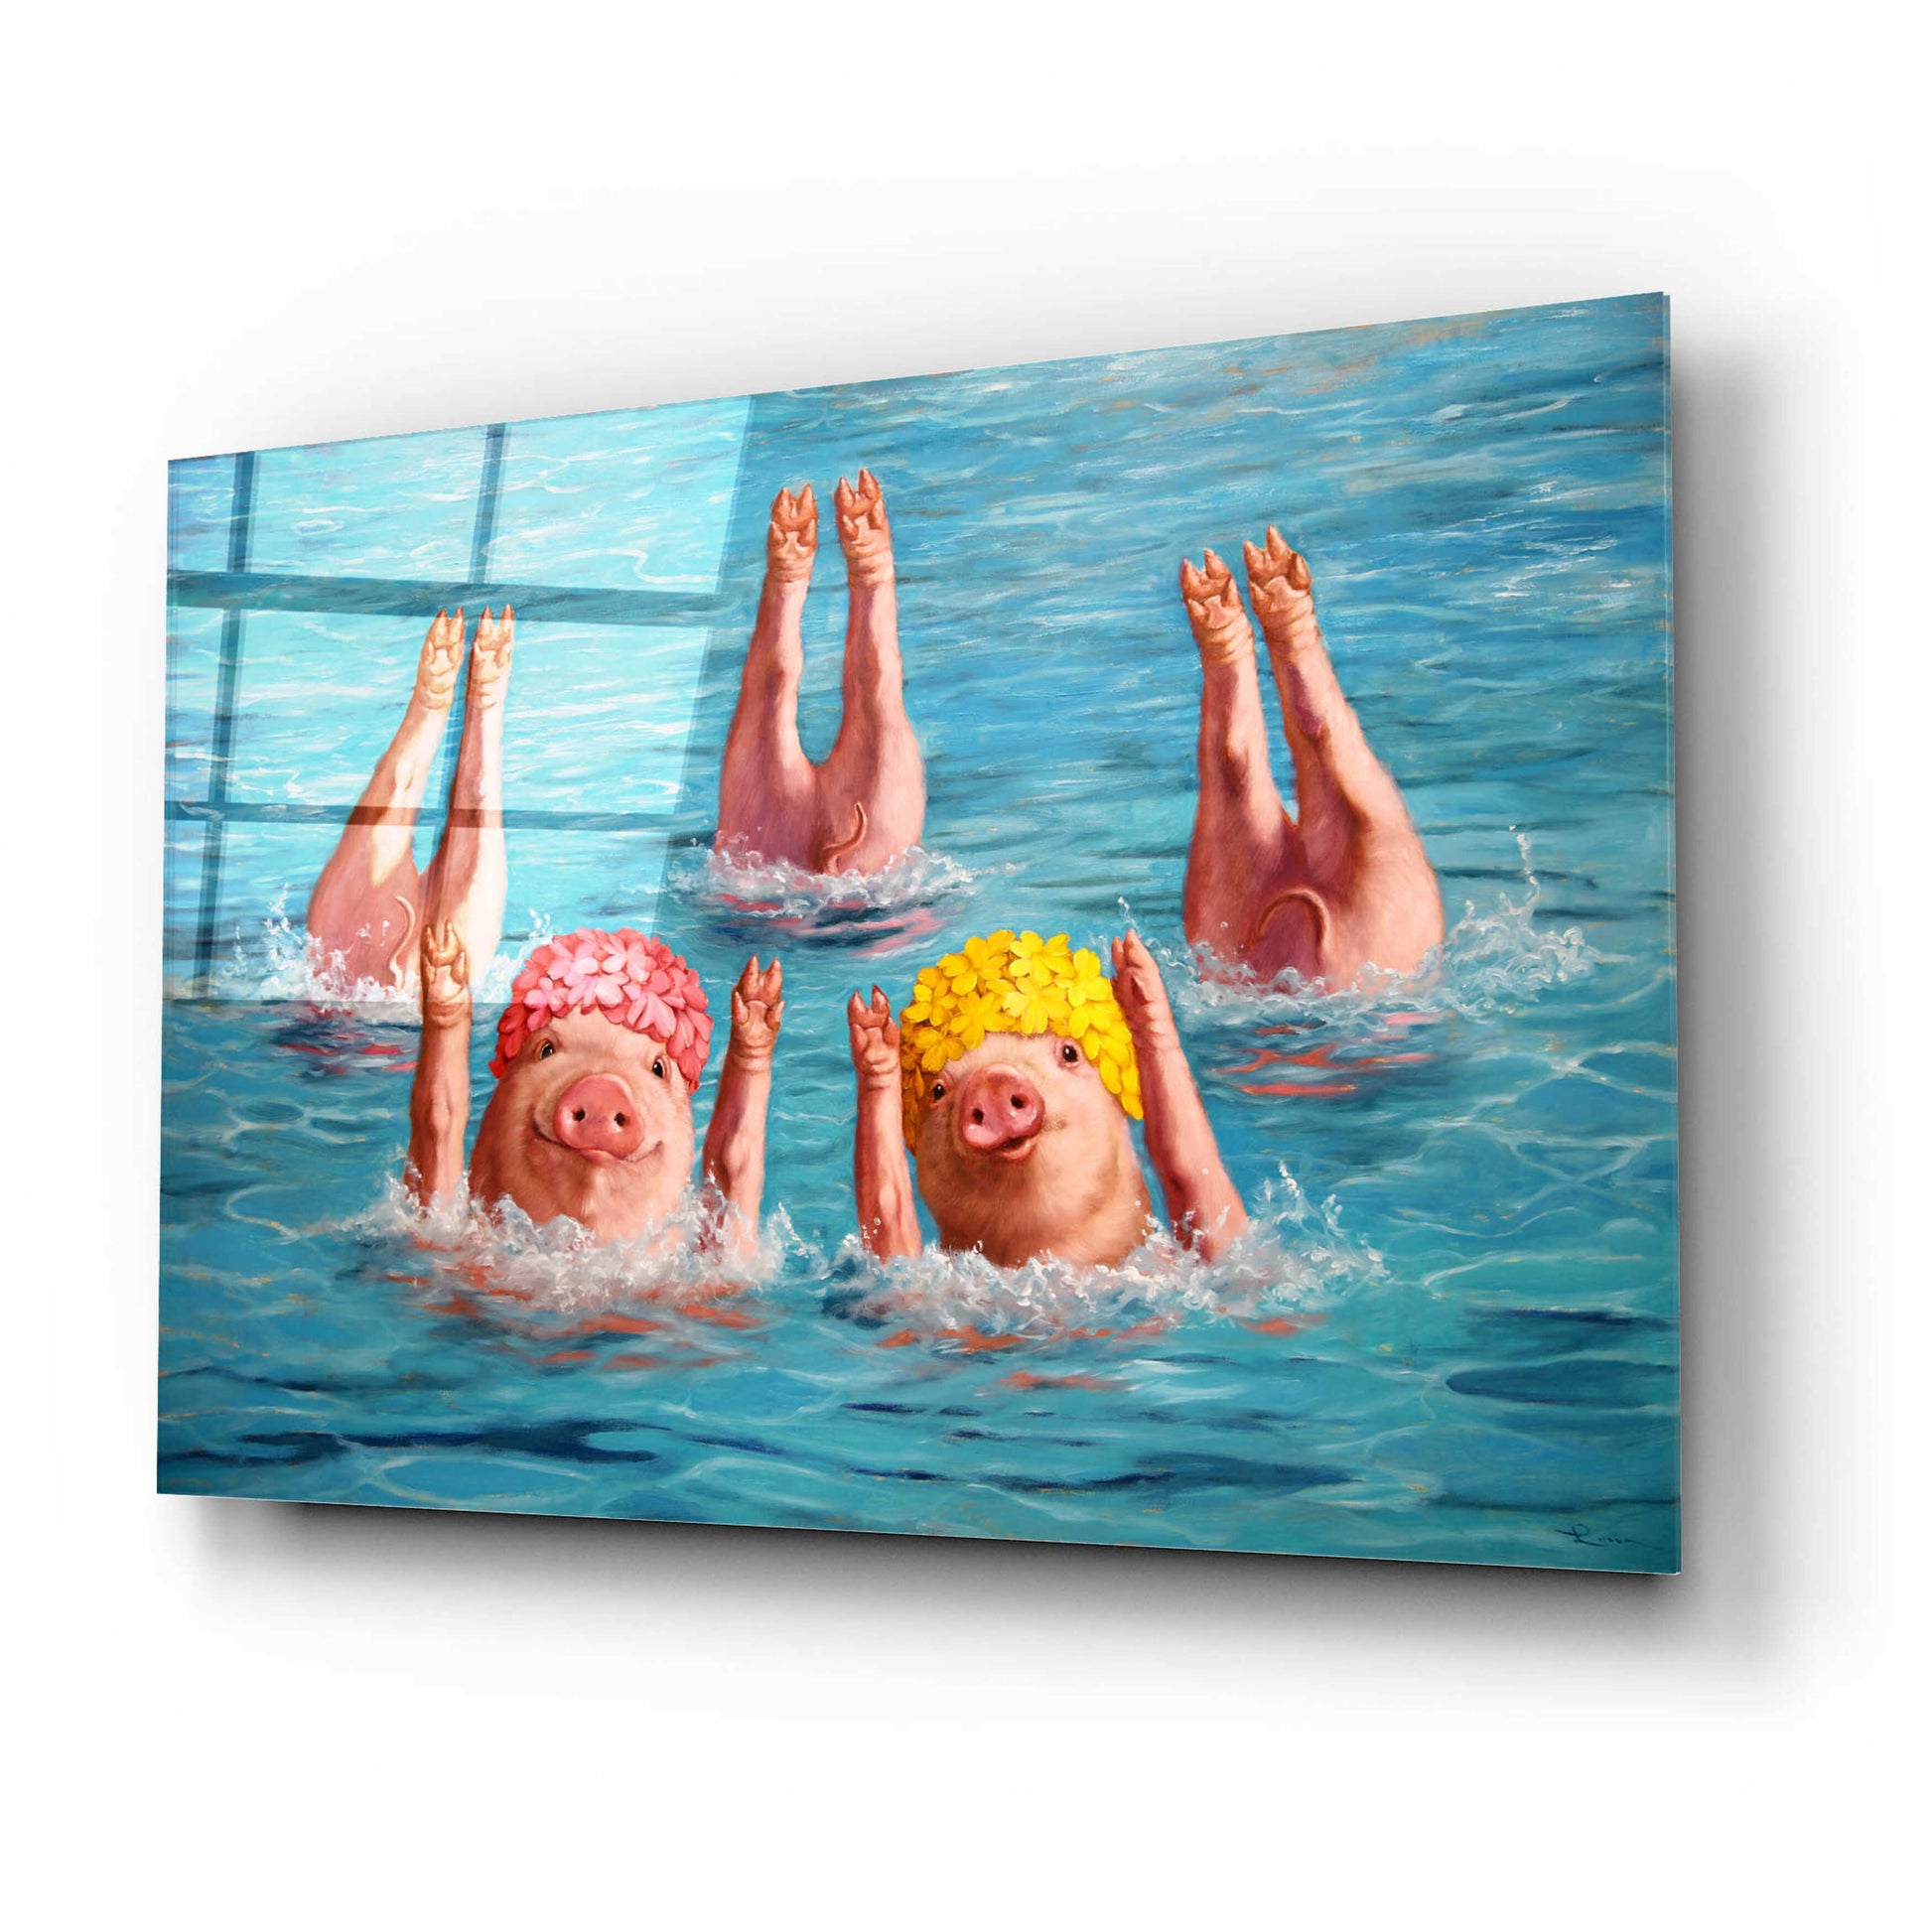 Epic Art 'Water Ballet' by Lucia Heffernan,24x16